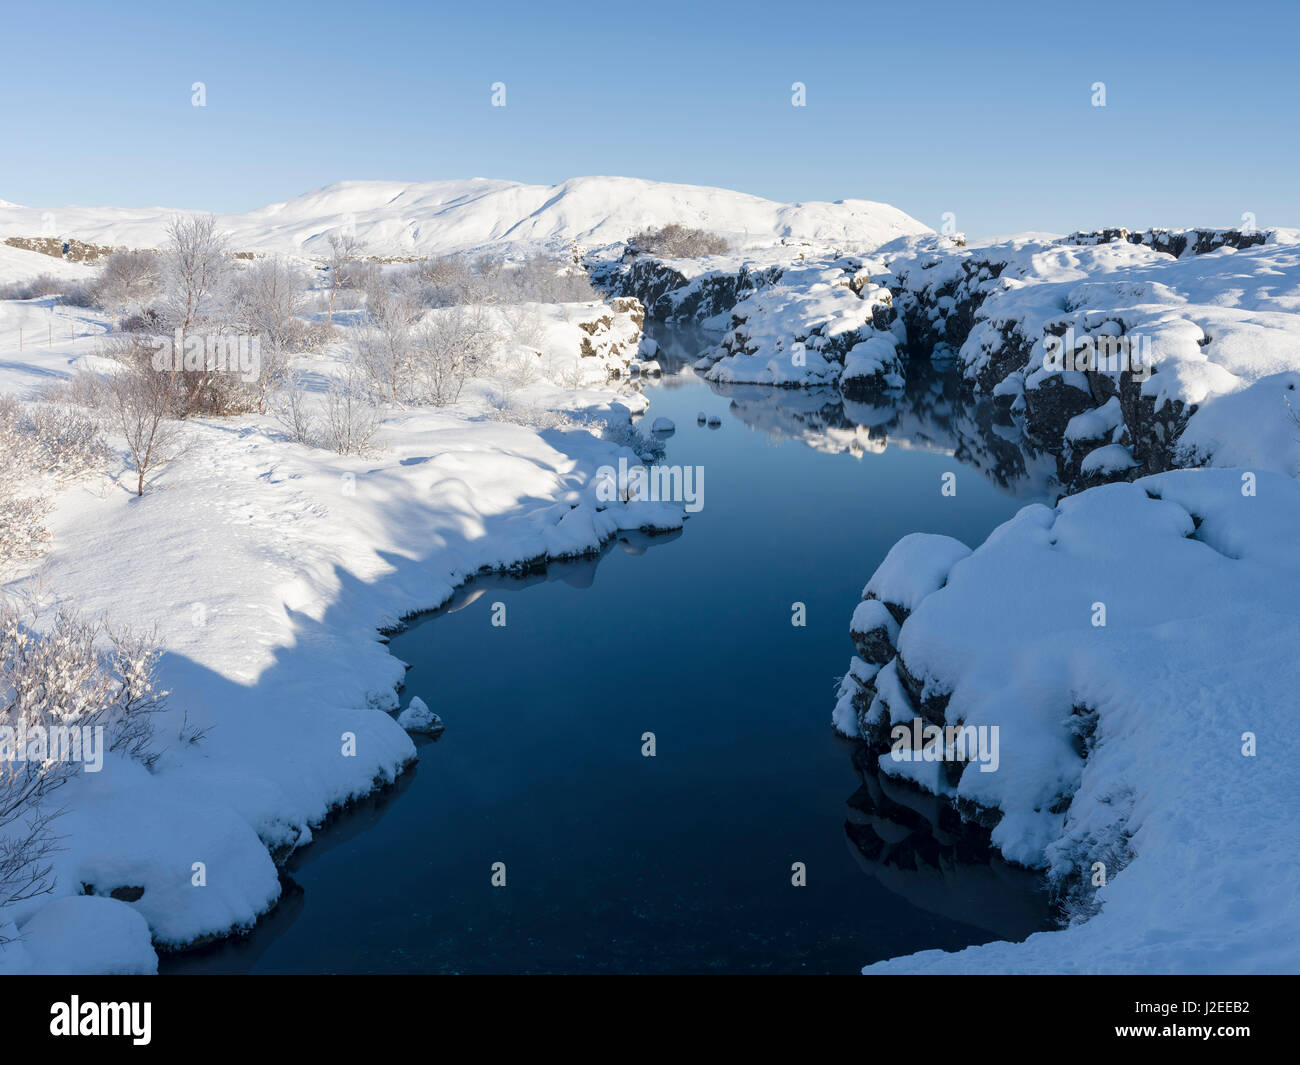 Flosagja une ligne de faille tectonique dans le Parc National de Thingvellir dans durant l'hiver dans la neige profonde. Thingvellir est inscrit comme site du patrimoine mondial de l'UNESCO. L'Islande Banque D'Images